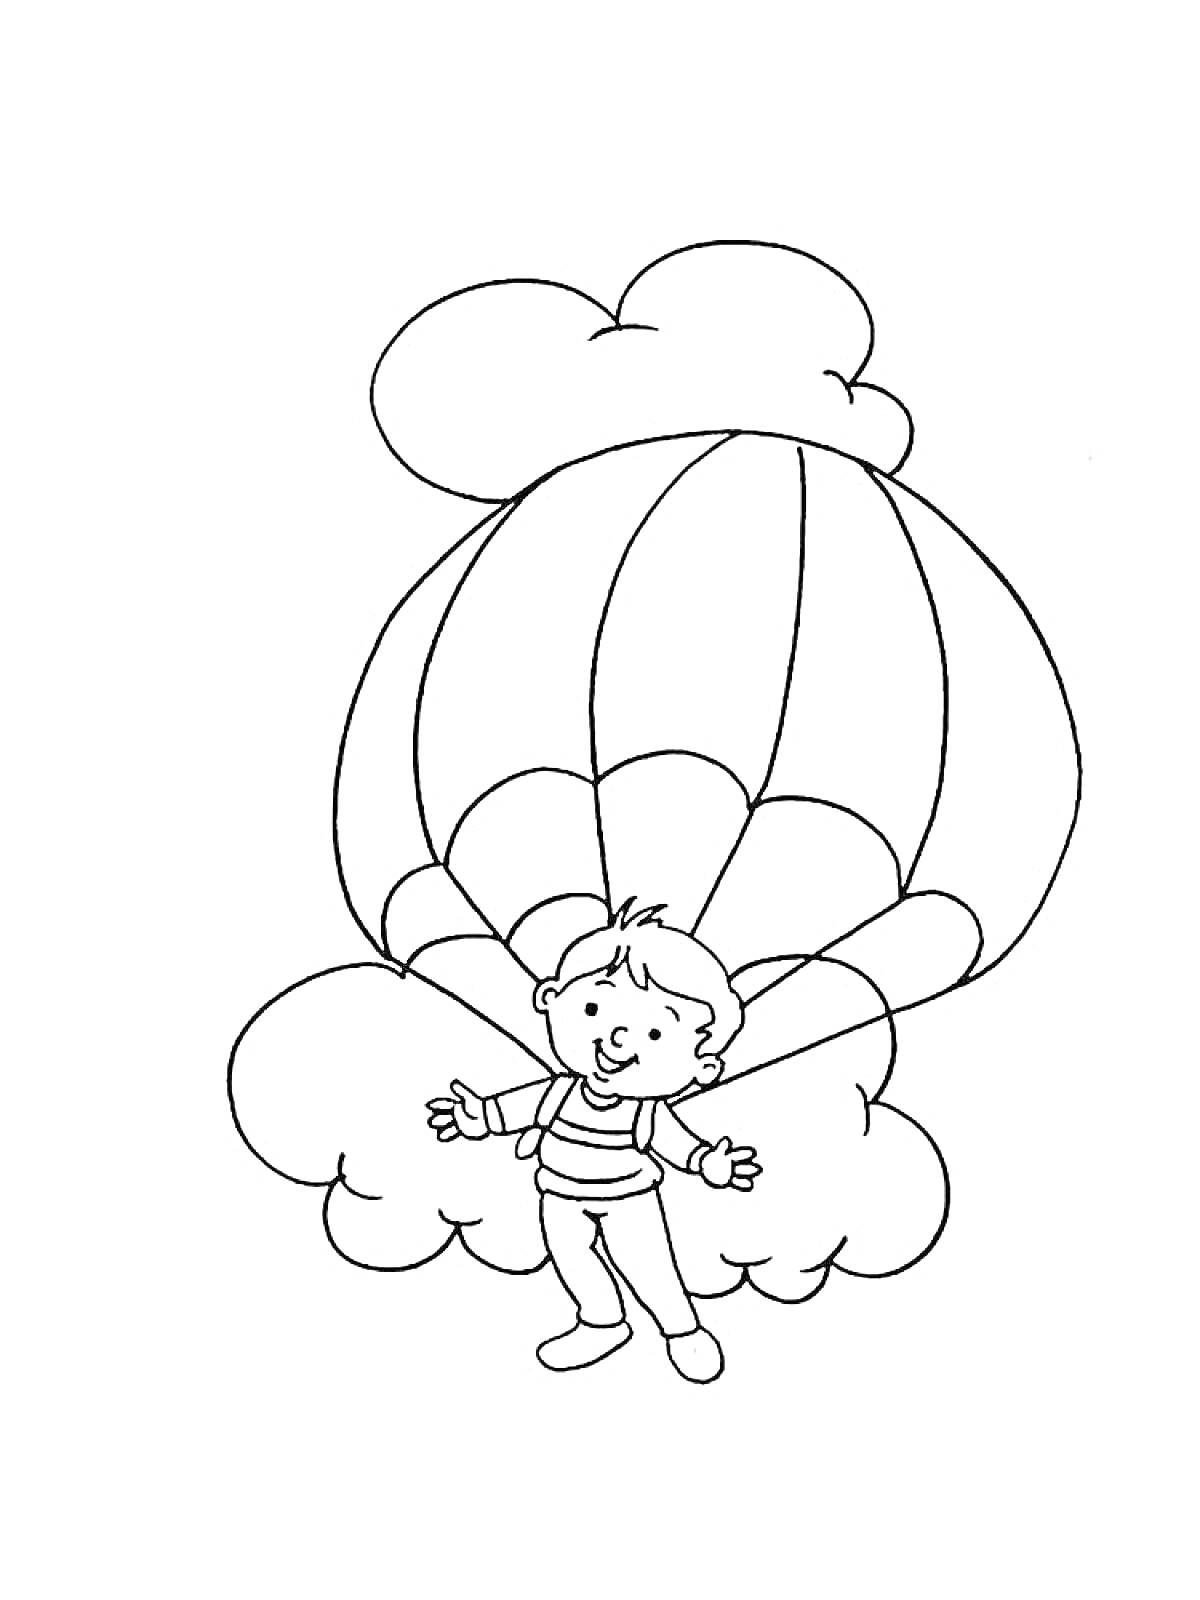 Раскраска Мальчик с парашютом на фоне облаков